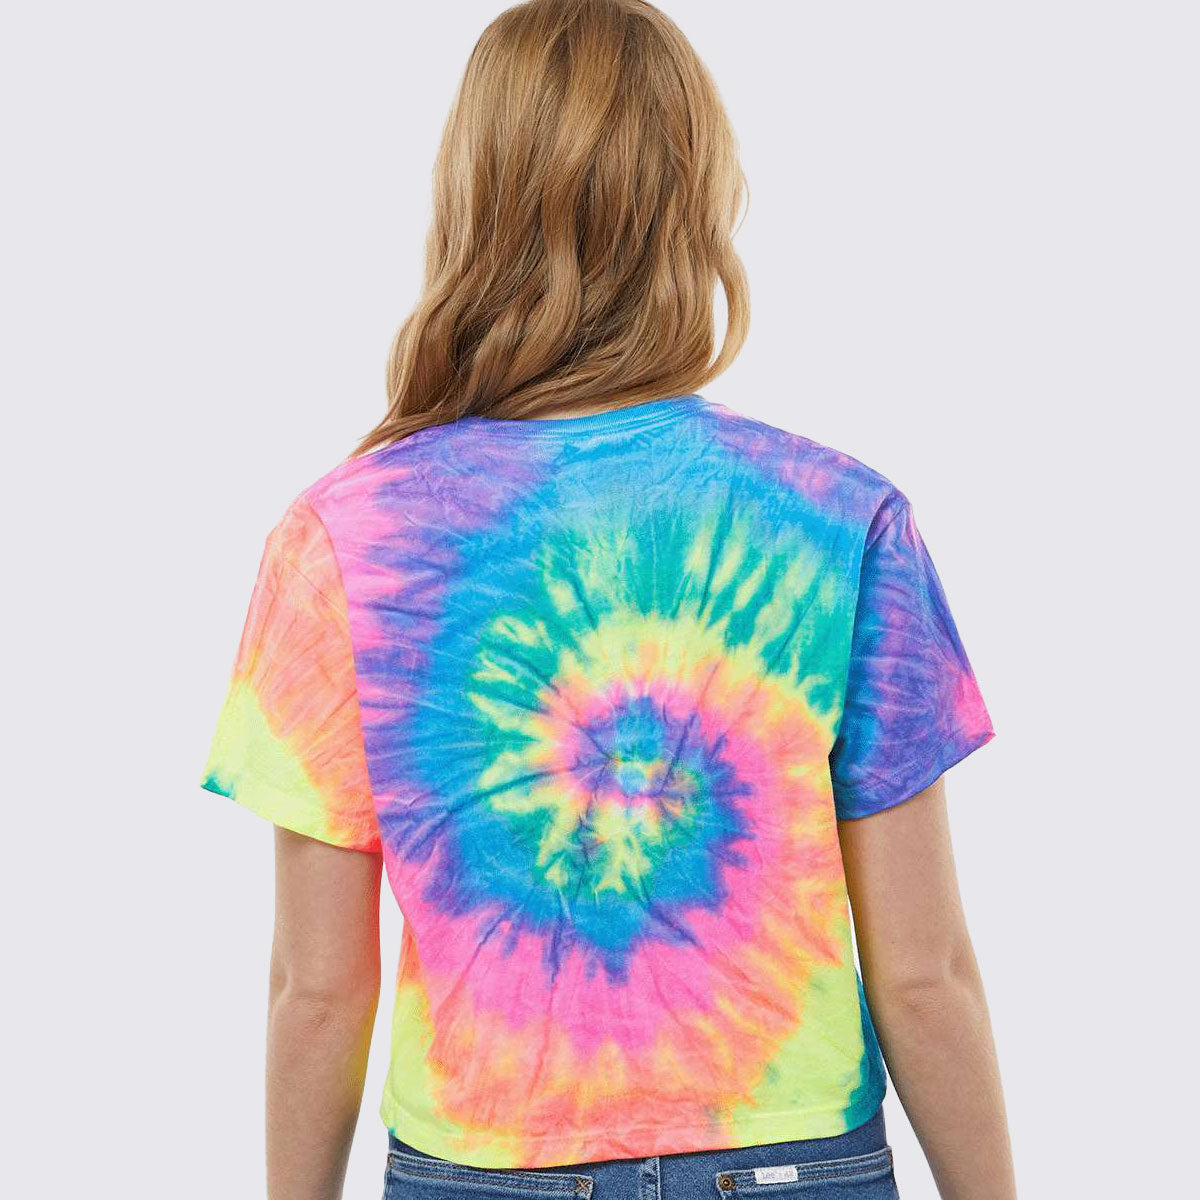 Gym Addict Women’s Tie-Dyed Crop T-Shirt